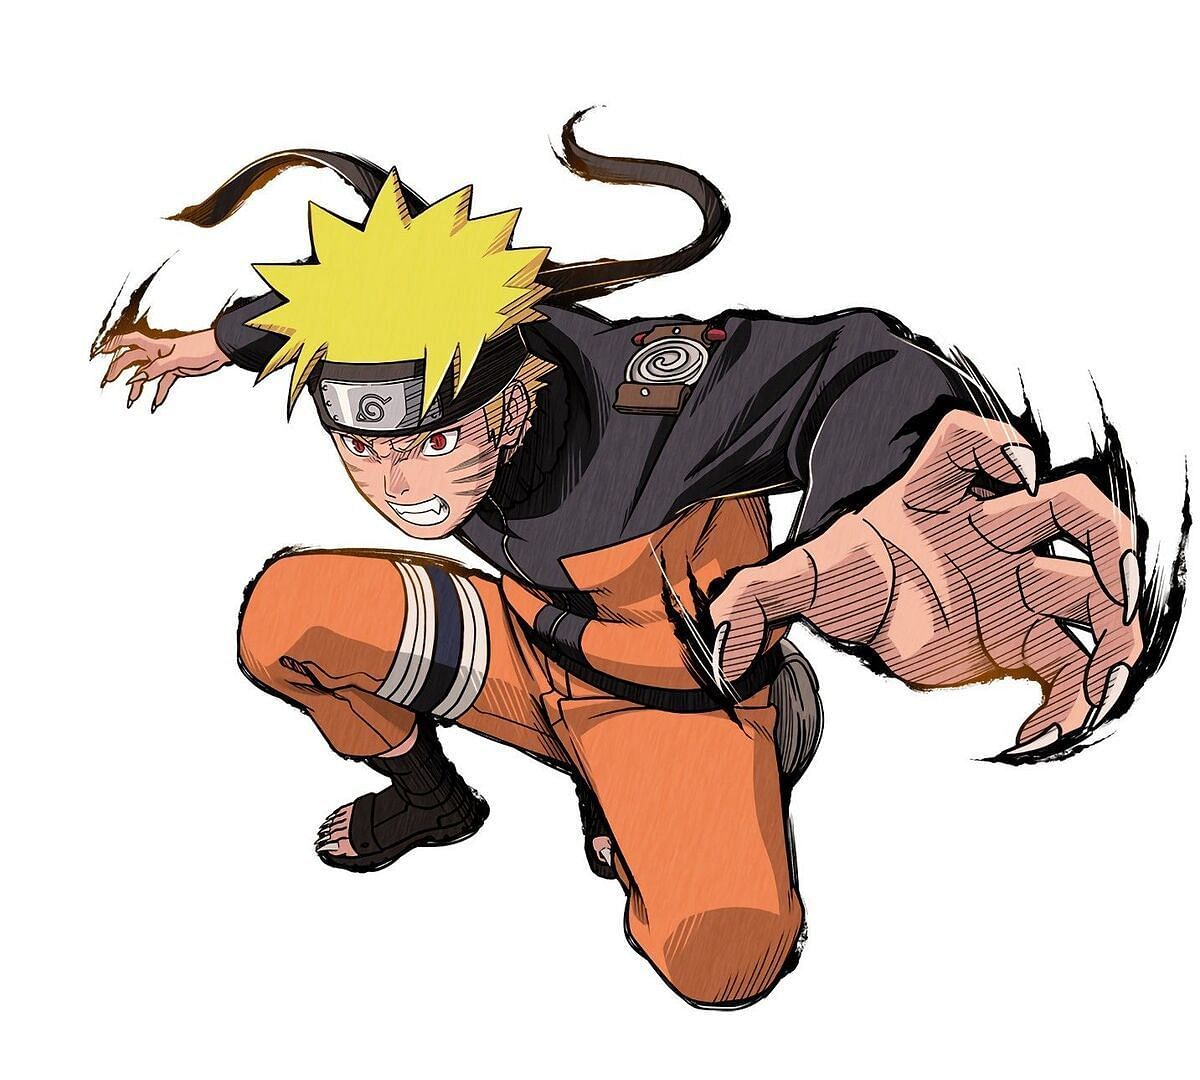 Naruto ready to attack (Image via Pierrot studios)